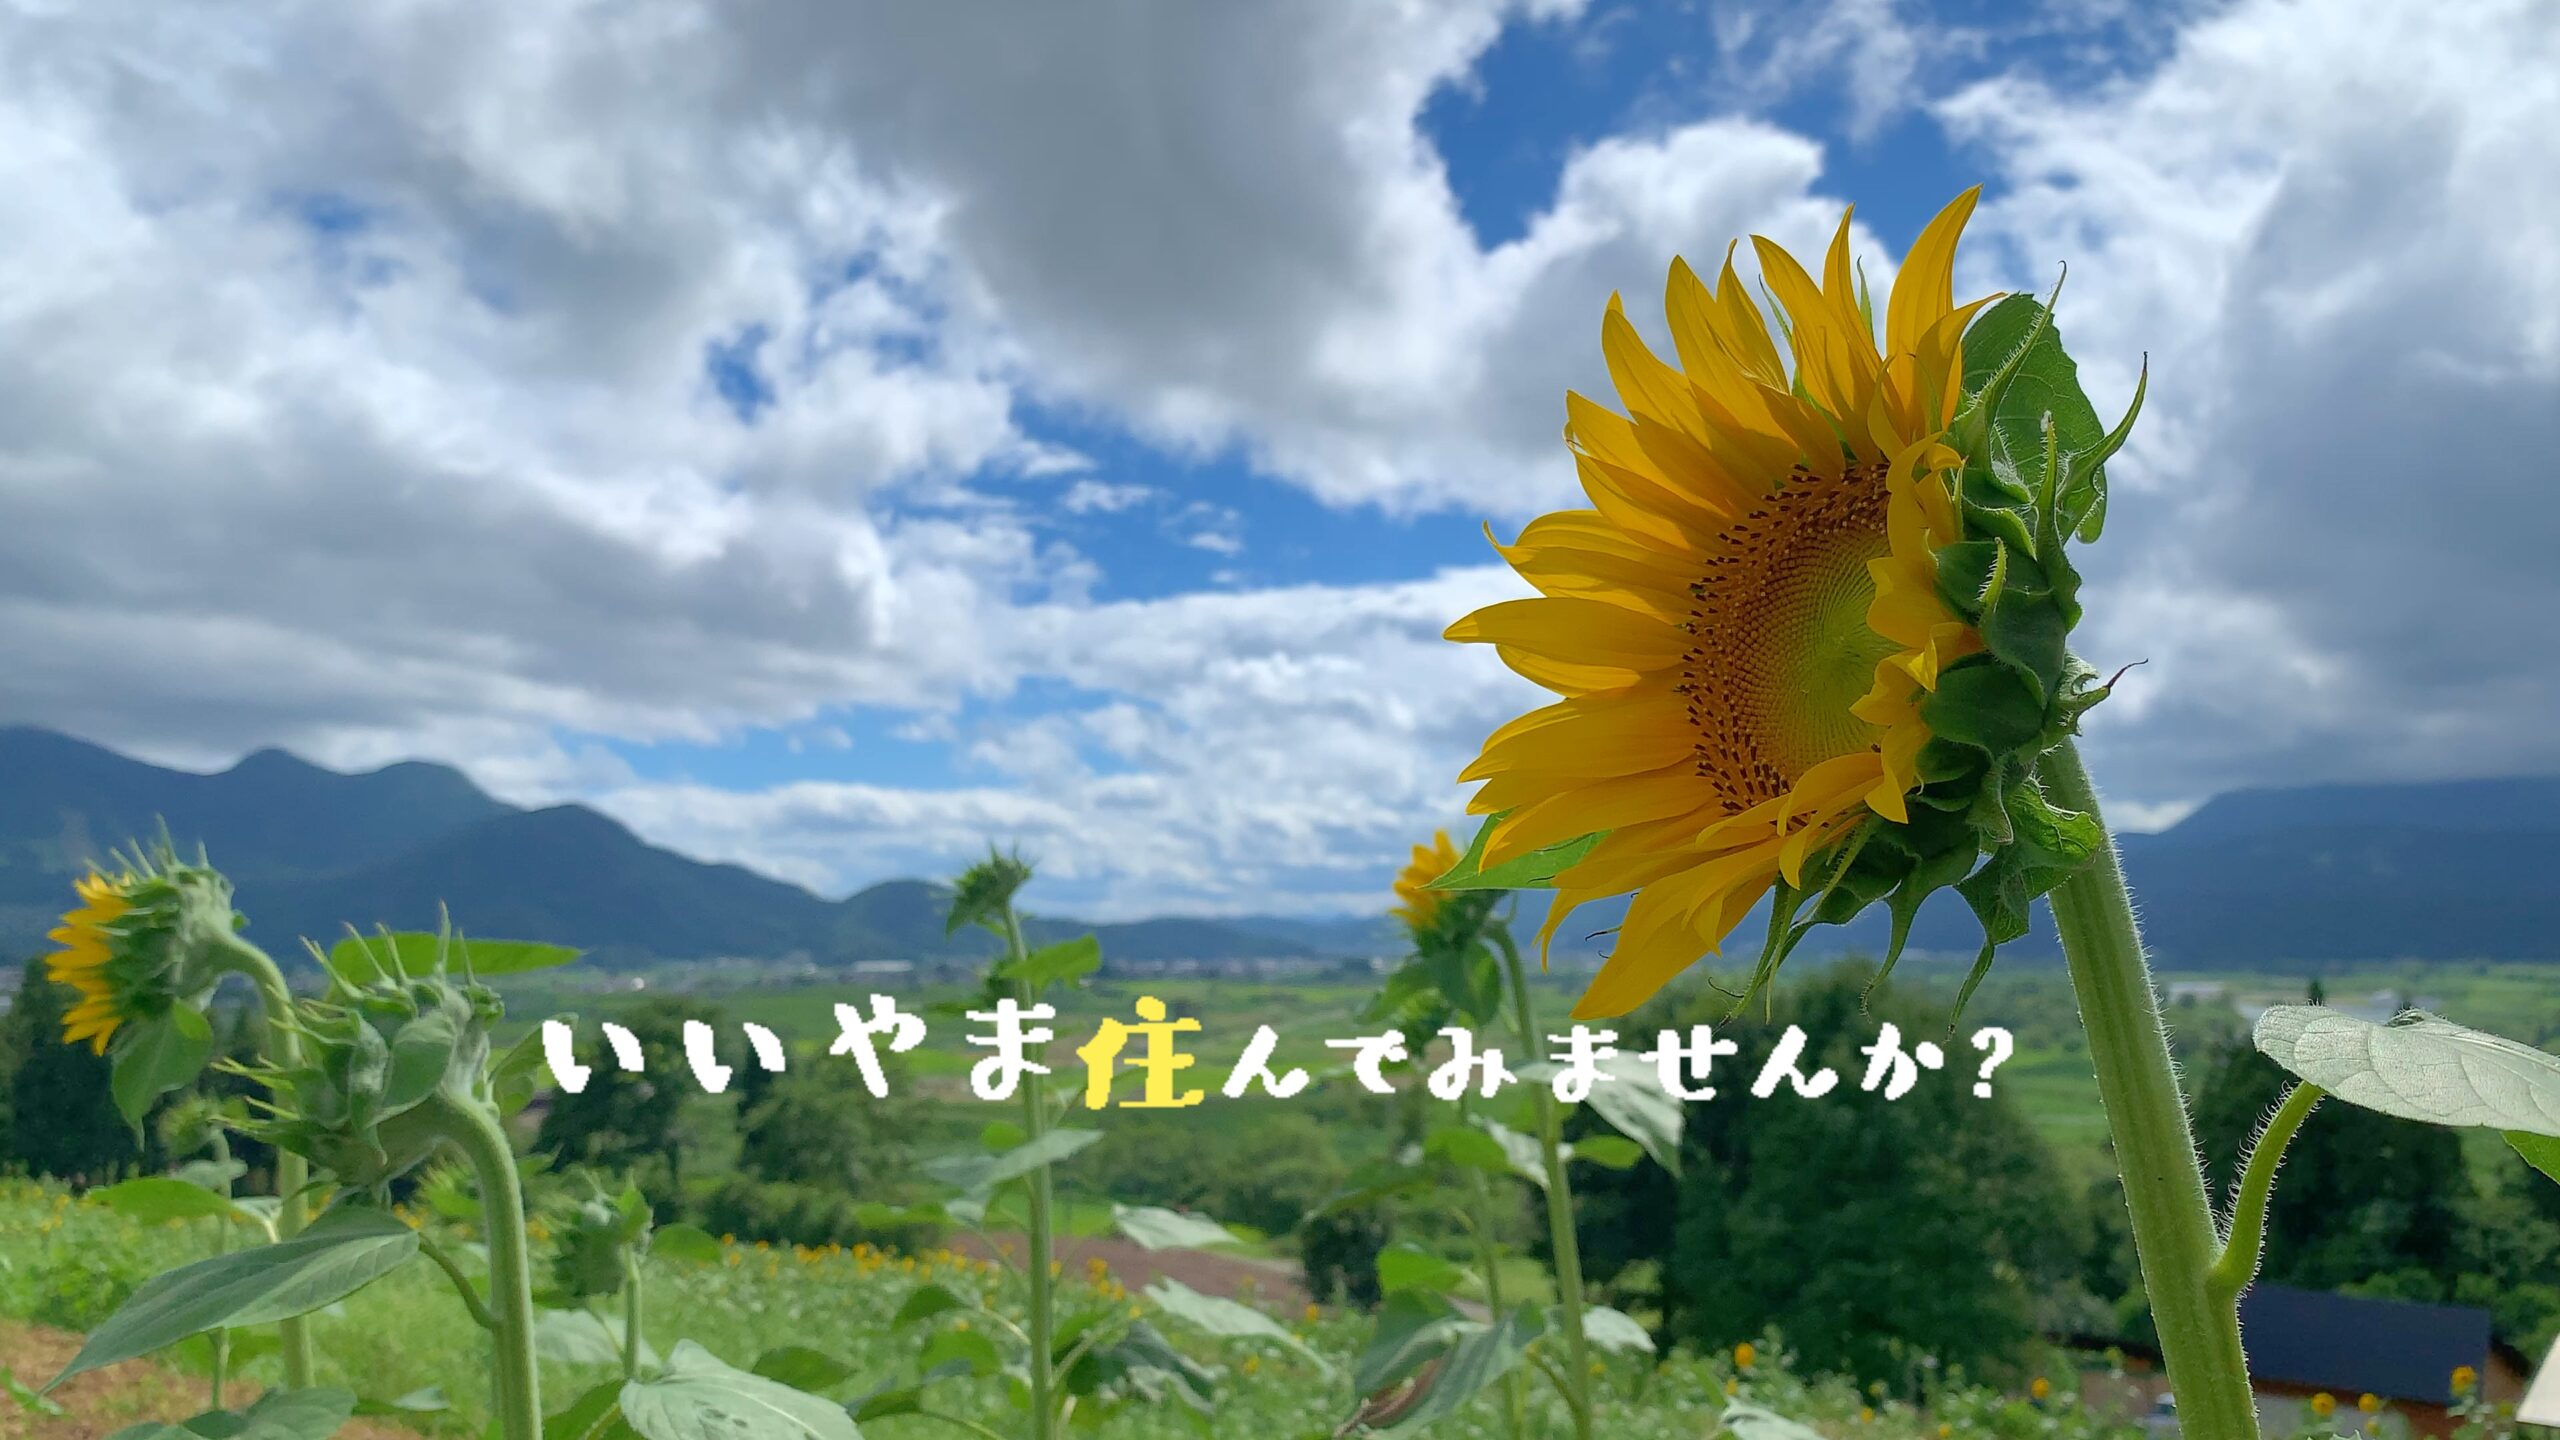 いいやま暮らしの動画をyoutubeで ひまわりがいっぱい 夏の菜の花公園 を公開 長野県飯山市 移住定住支援サイト